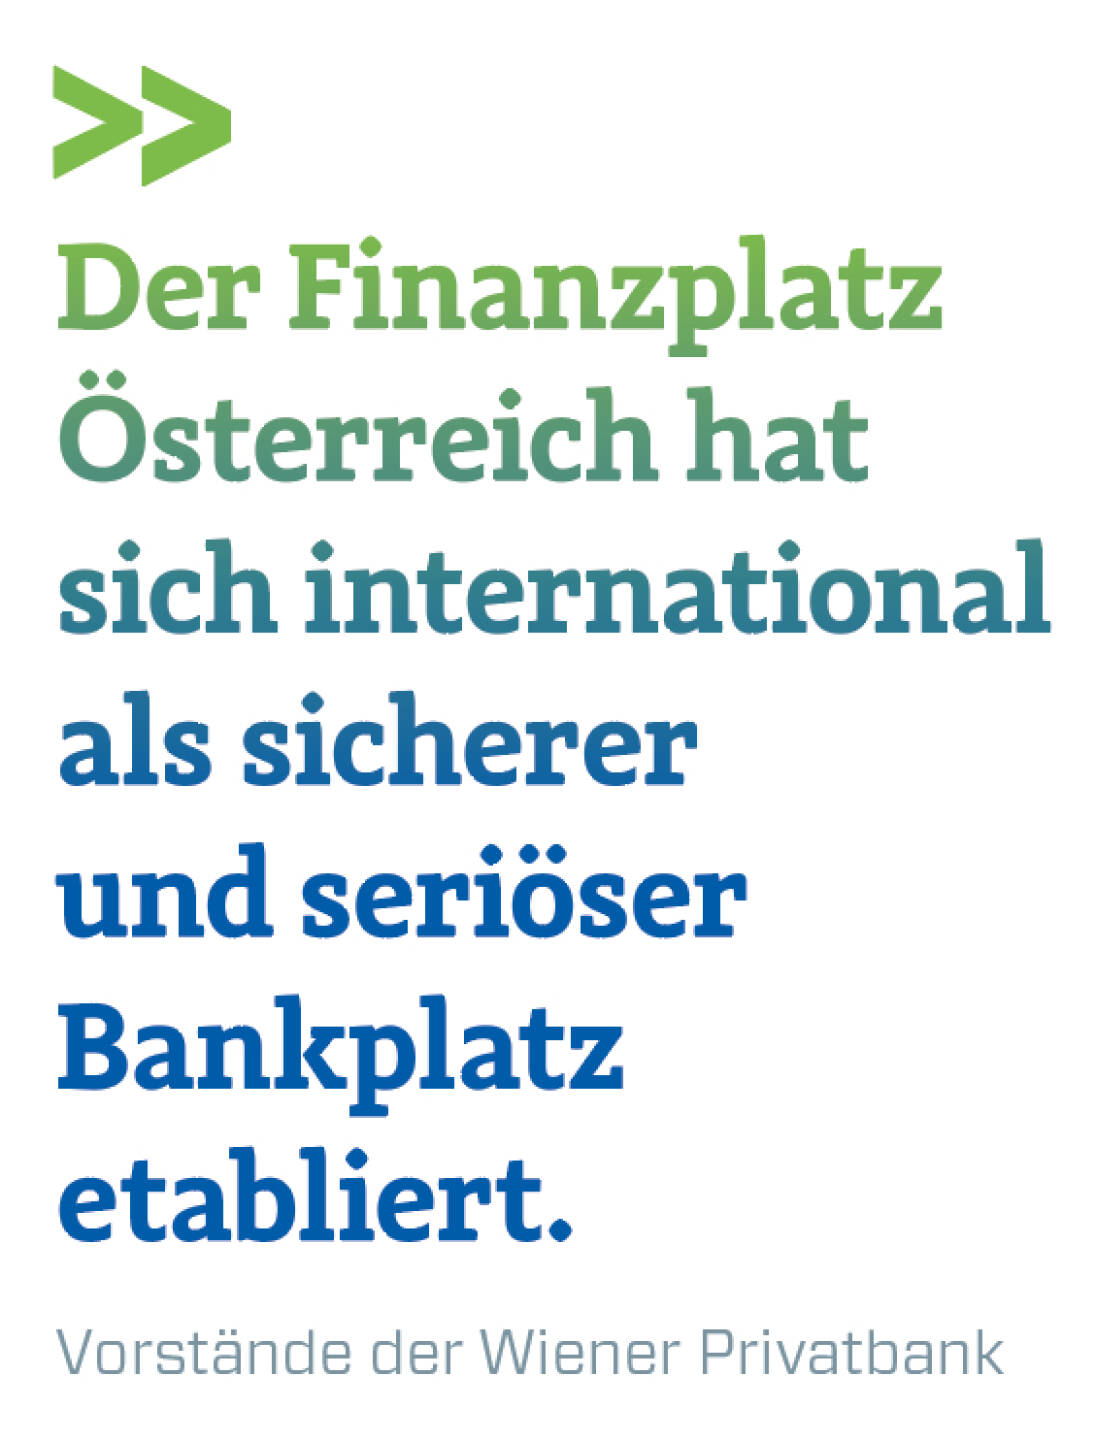 Der Finanzplatz Österreich hat sich international als sicherer und seriöser Bankplatz etabliert.
Vorstände der Wiener Privatbank
